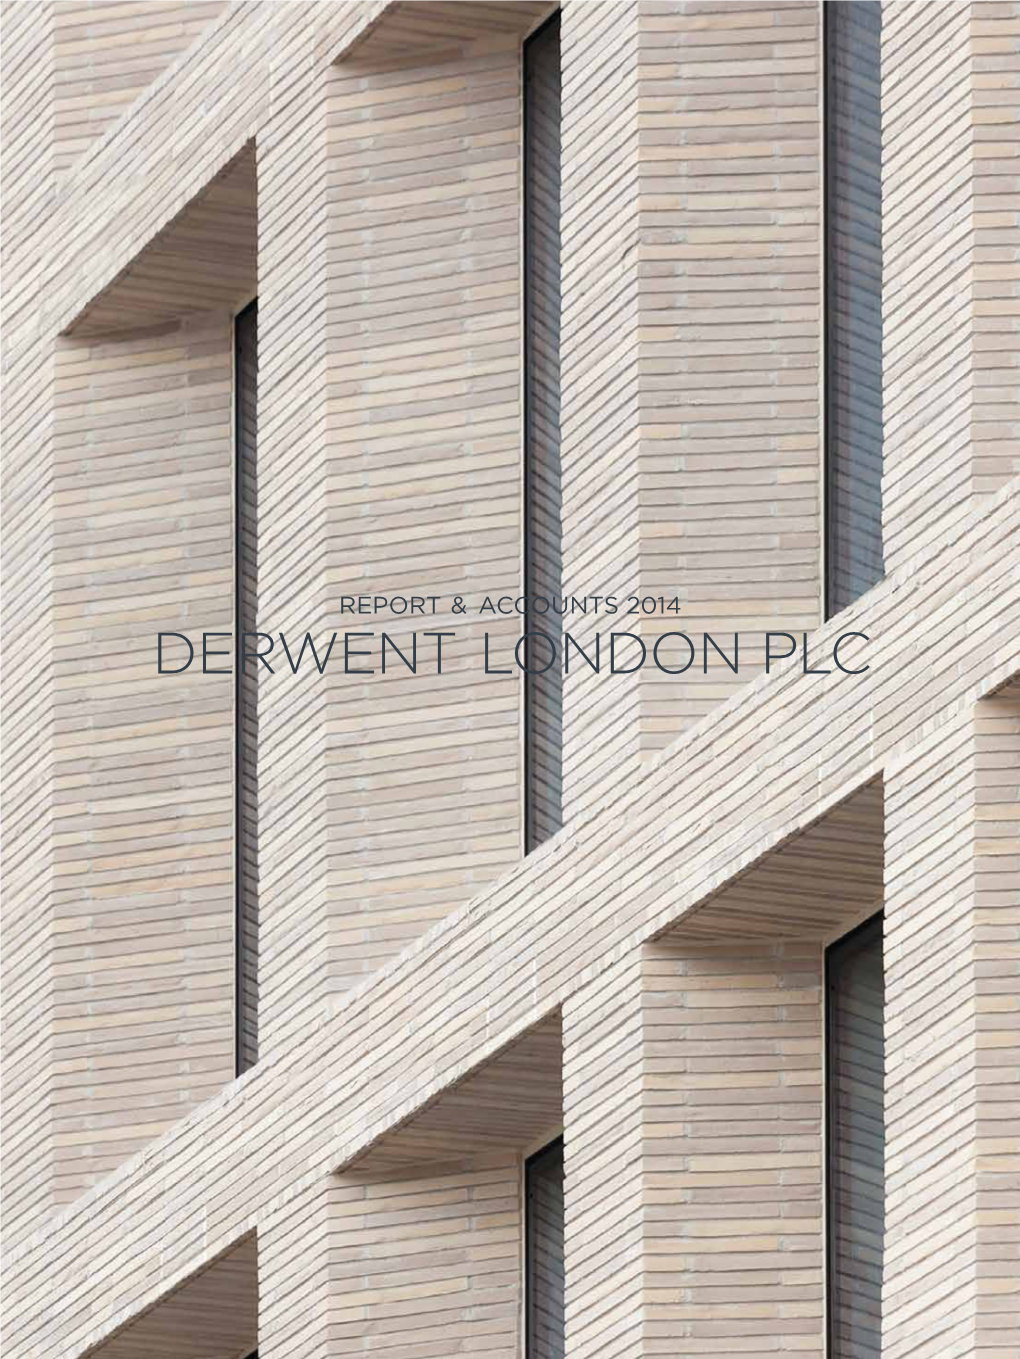 Derwent London Plc 1